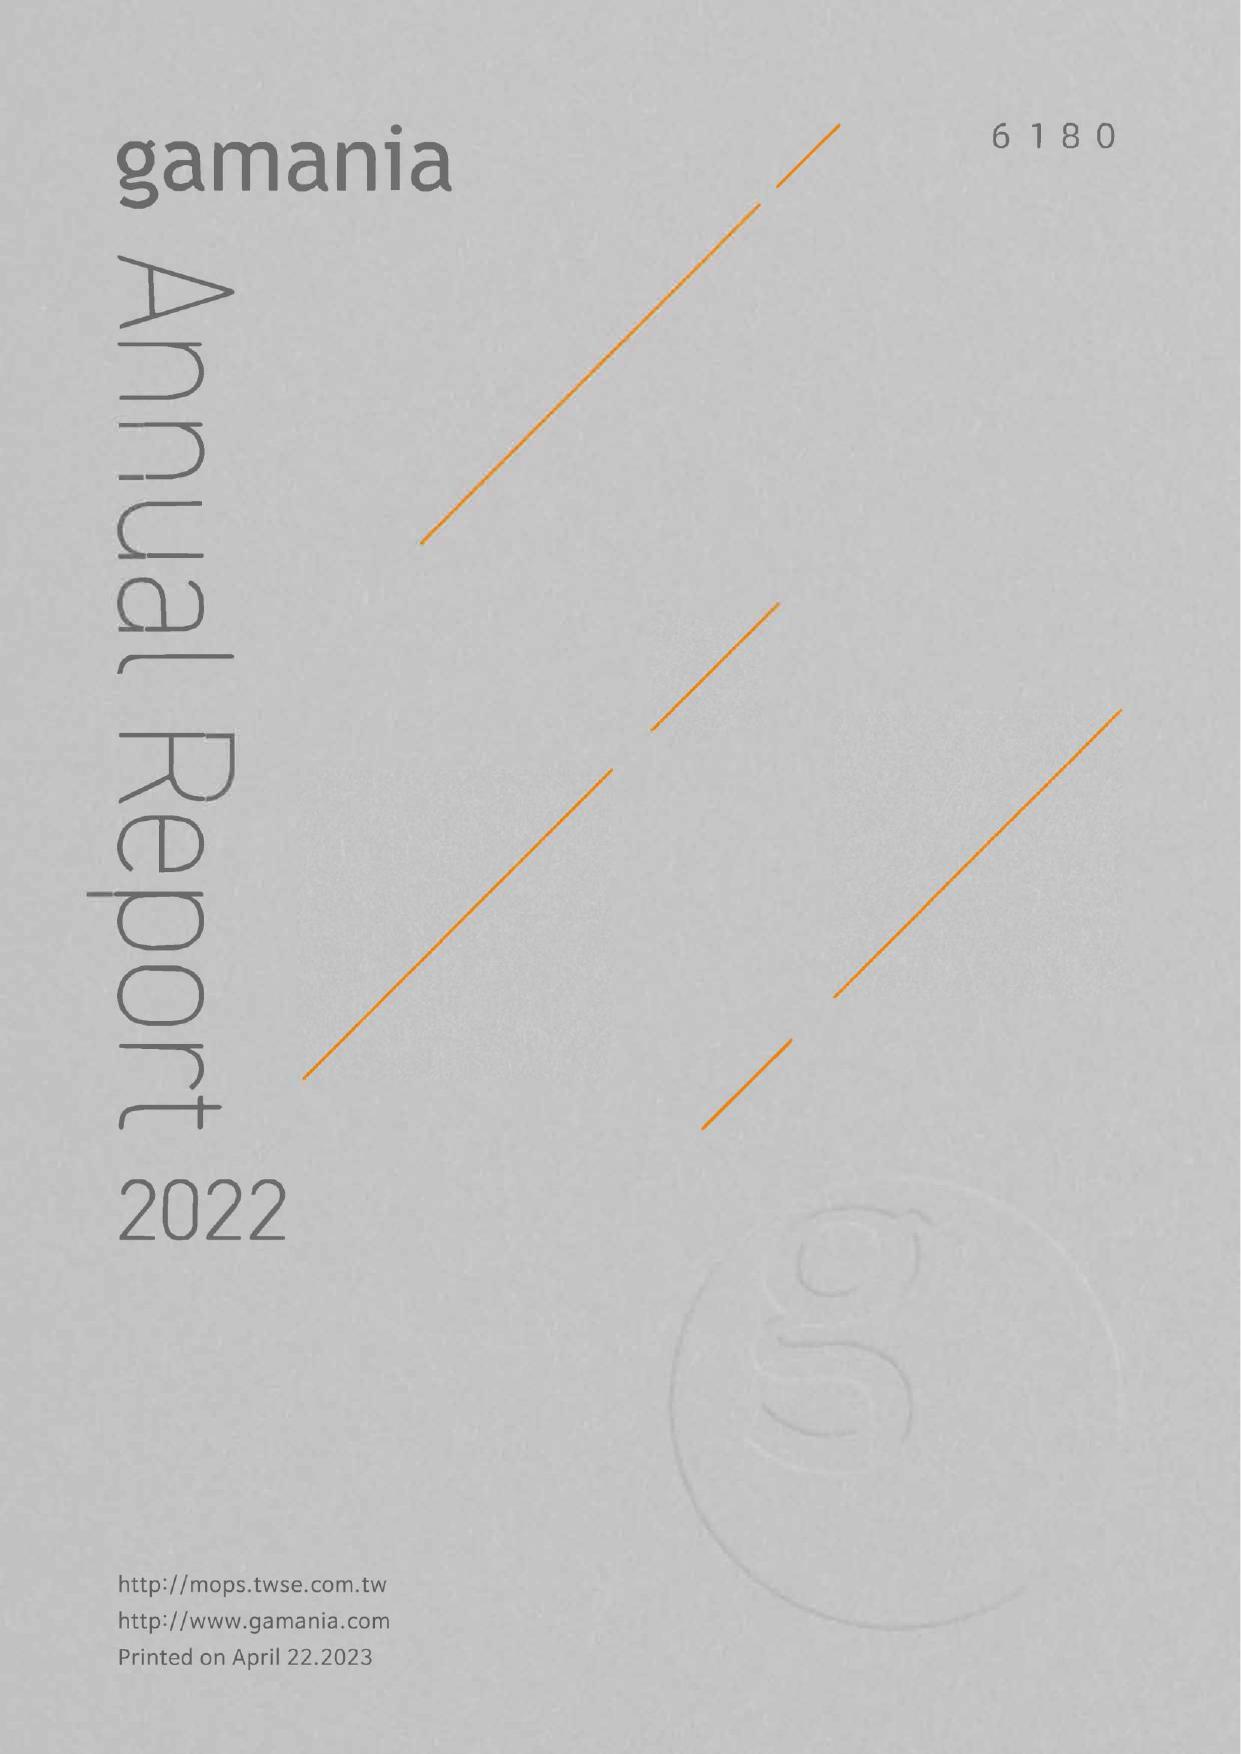 GAMANIA 2022 Annual Report